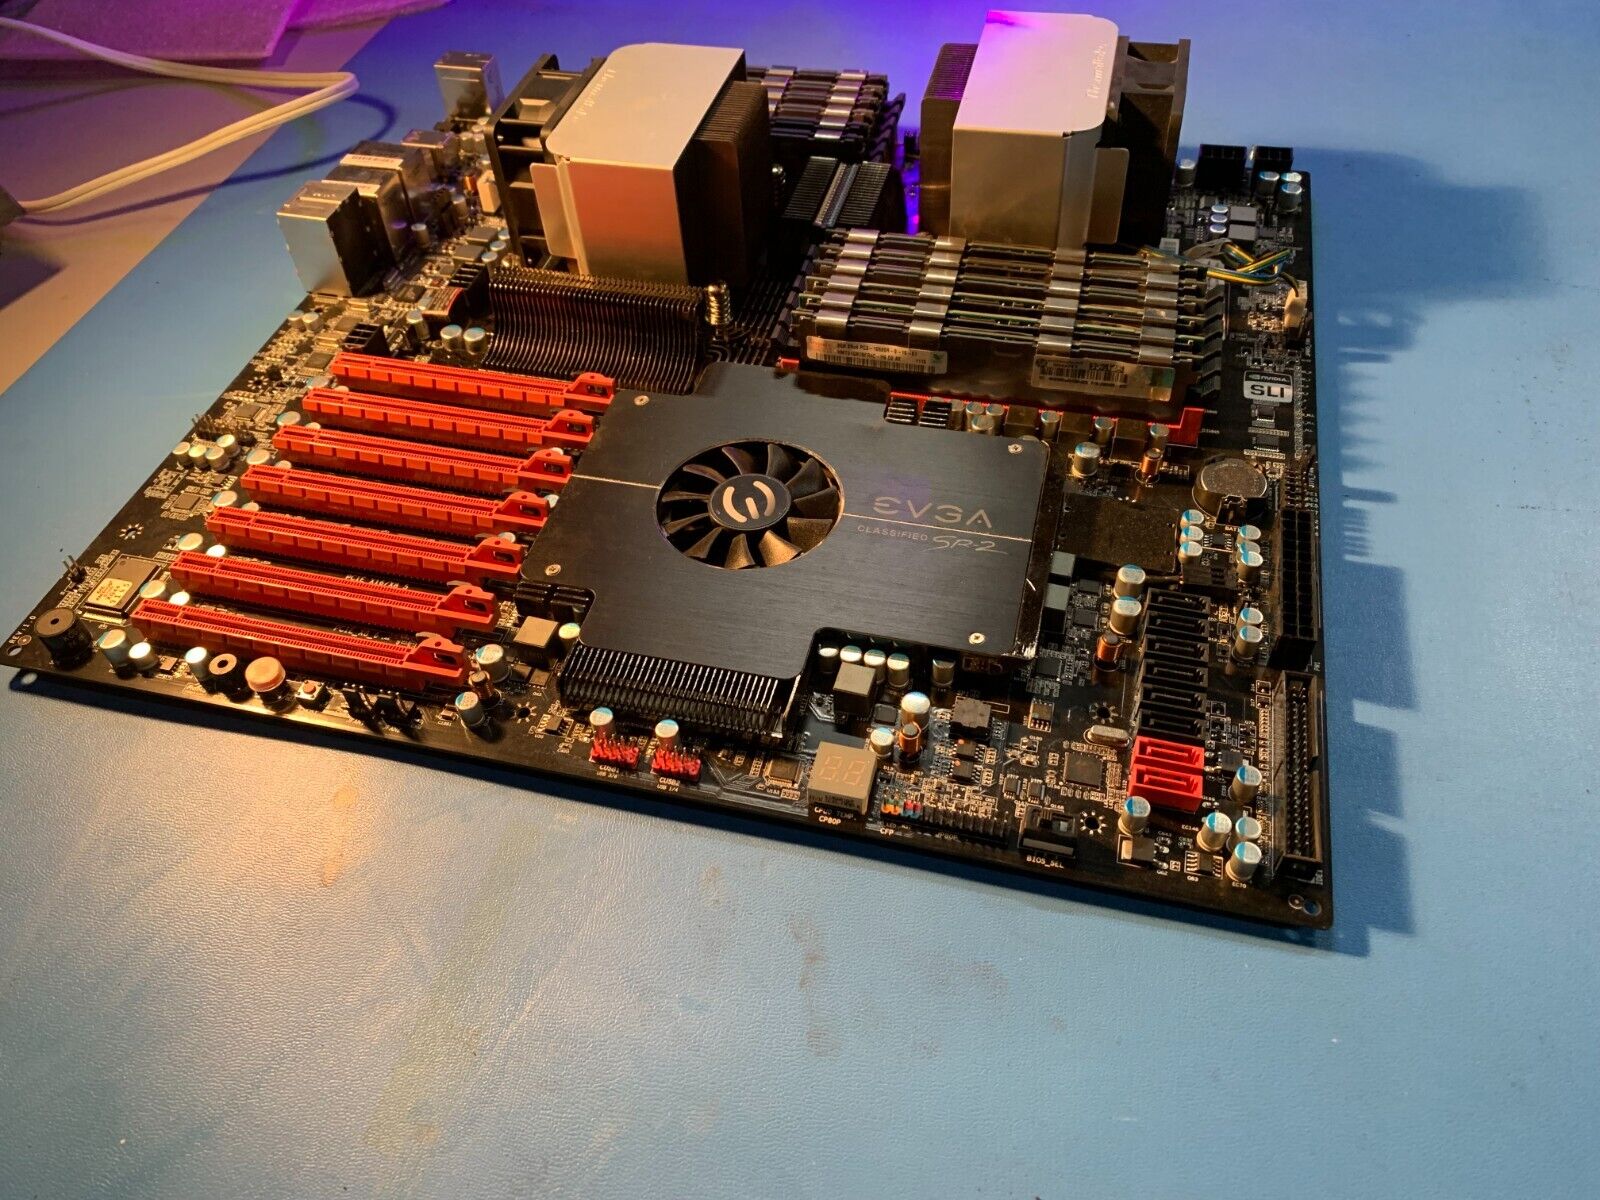 EVGA Classified Super Record 2 (SR-2) 100% W/ 2 Xeon x5690 Processors 96GB RAM